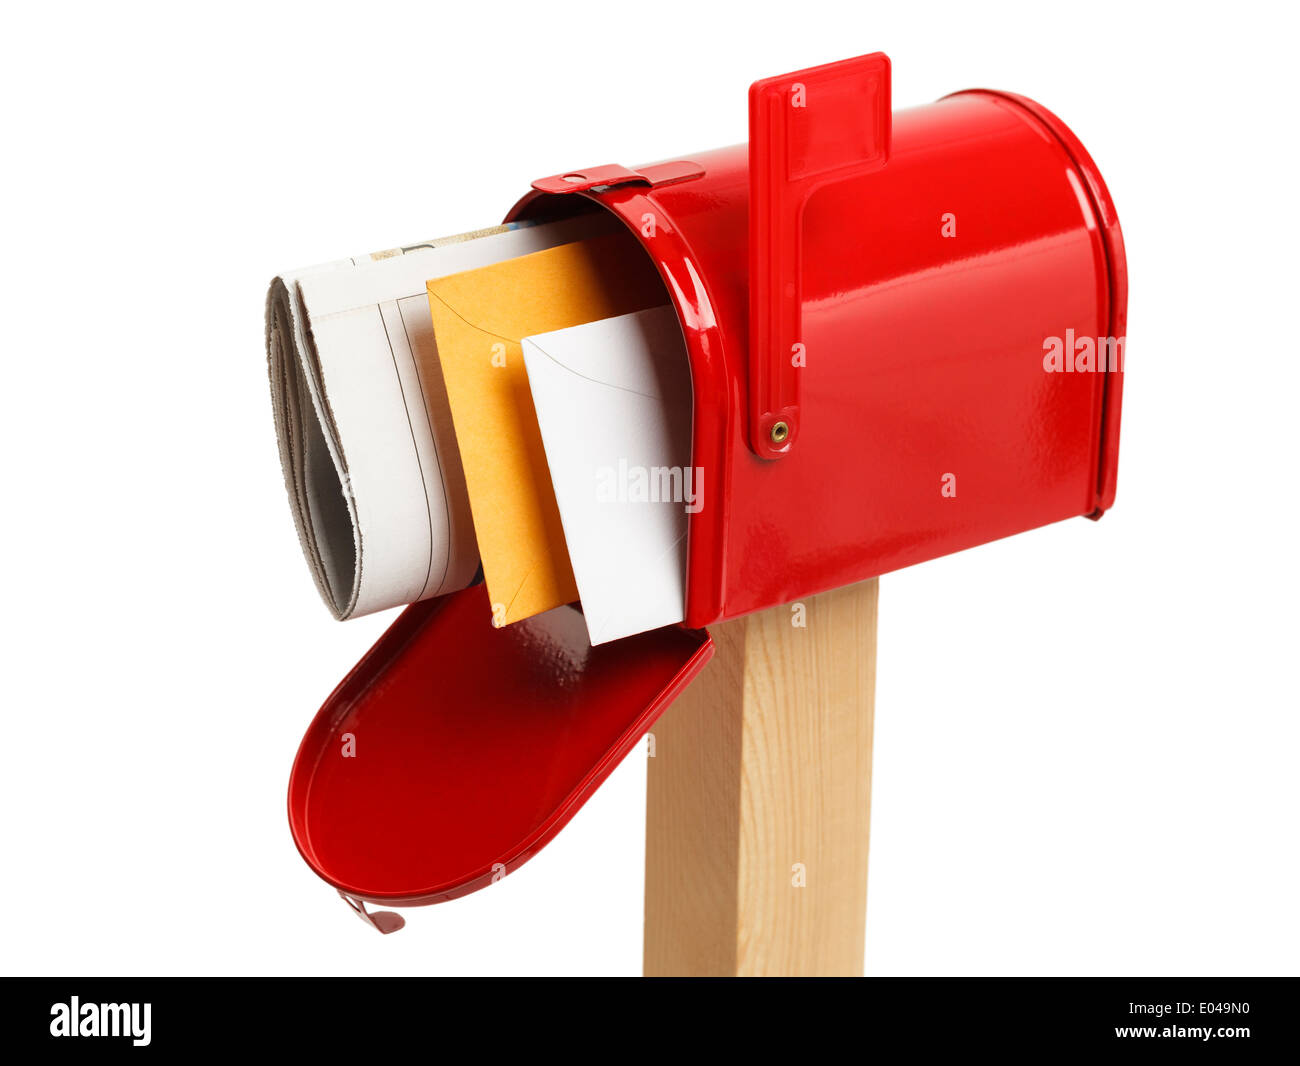 Roten Briefkasten mit E-Mail-obere Ansicht Isolated on White Background. Stockfoto